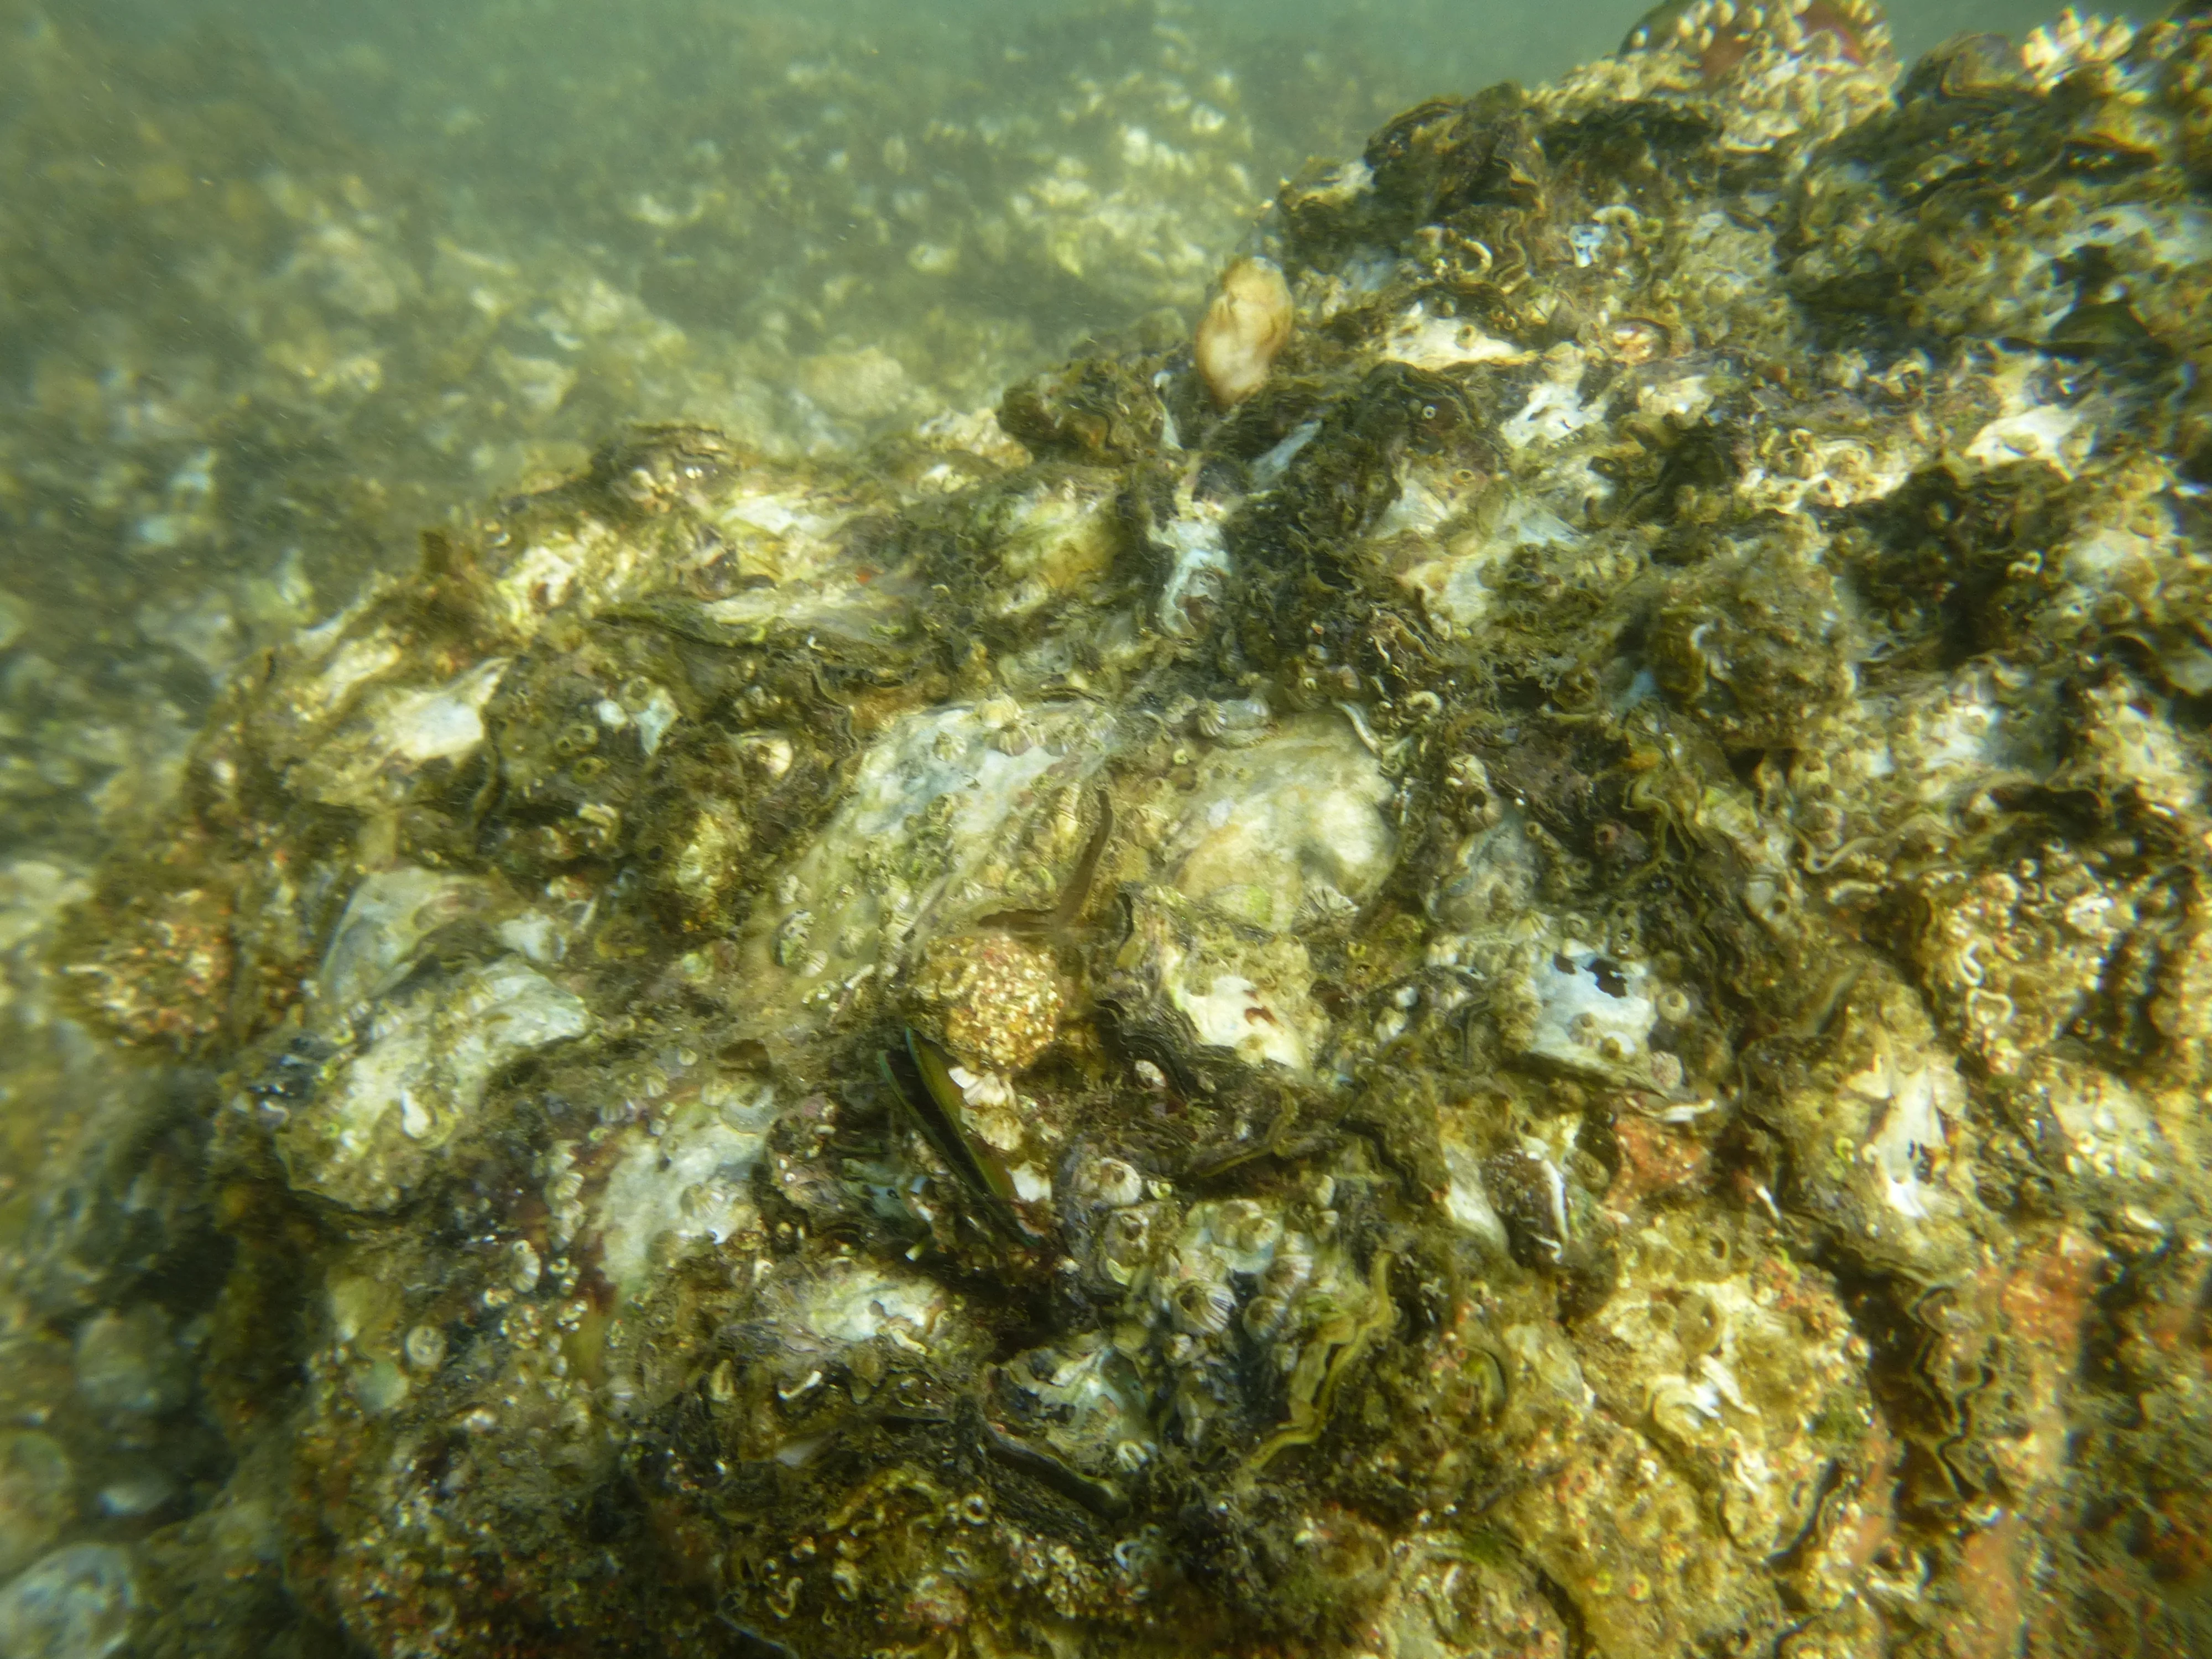 雖然受吐露港水域富營養化影響，一些海底貝類礁因缺氧死亡，但在丫洲仍有一些具韌性的貝類礁存在。（圖片由大自然協會提供）